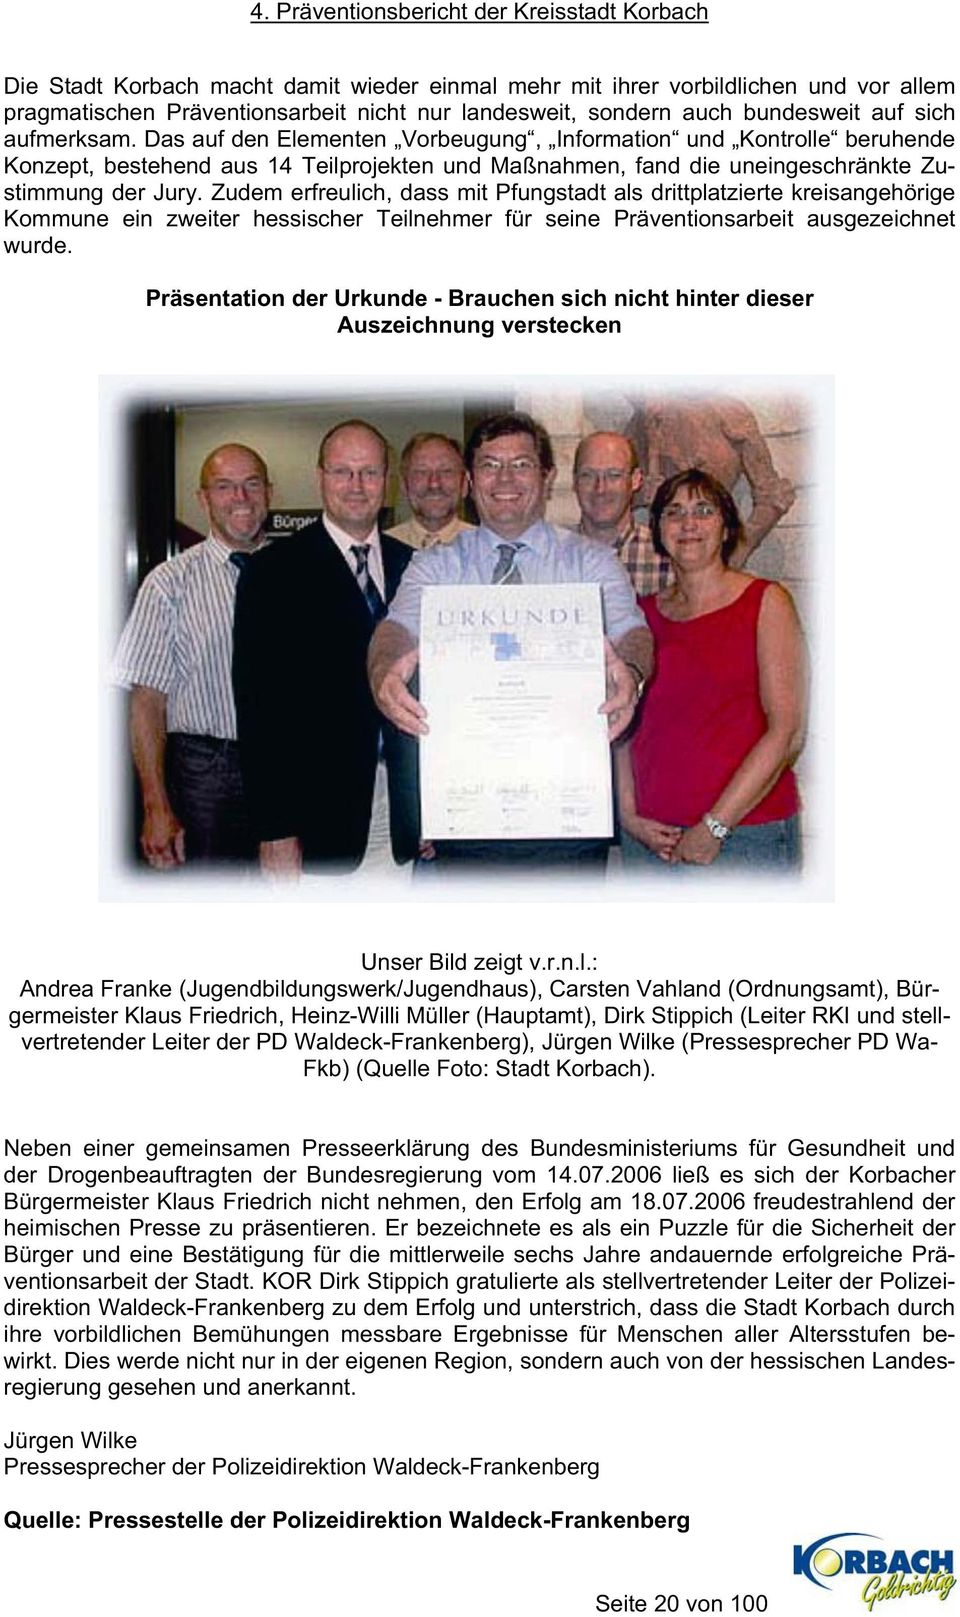 Zudem erfreulich, dass mit Pfungstadt als drittplatzierte kreisangehörige Kommune ein zweiter hessischer Teilnehmer für seine Präventionsarbeit ausgezeichnet wurde.